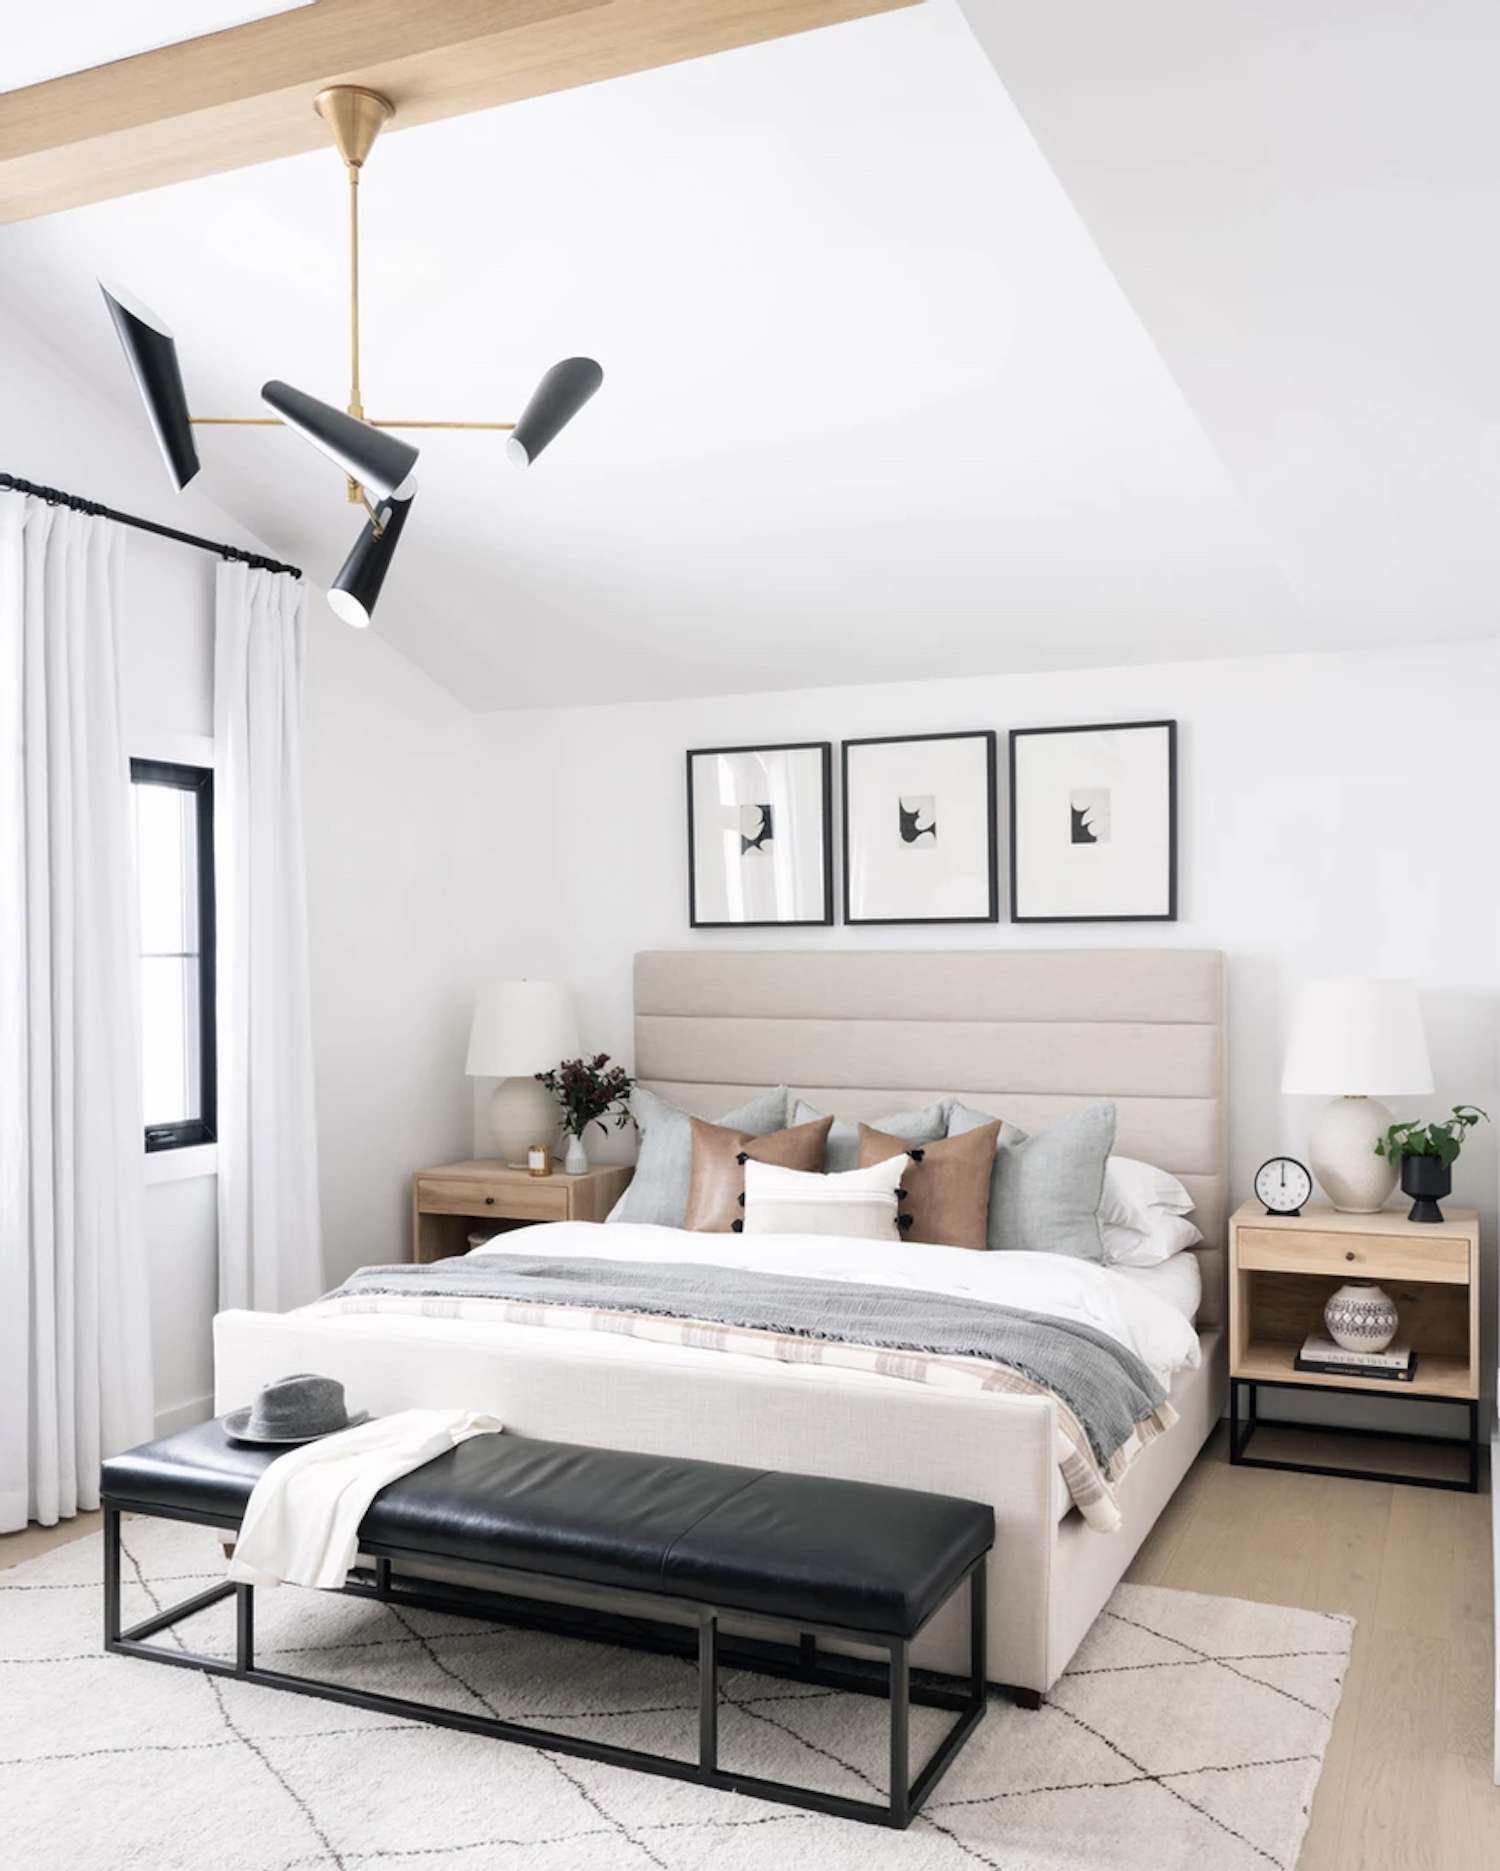 dormitorio moderno con detalles en gris claro y marrón. alfombra de área blanca. Banco de cuero negro al final de la cama